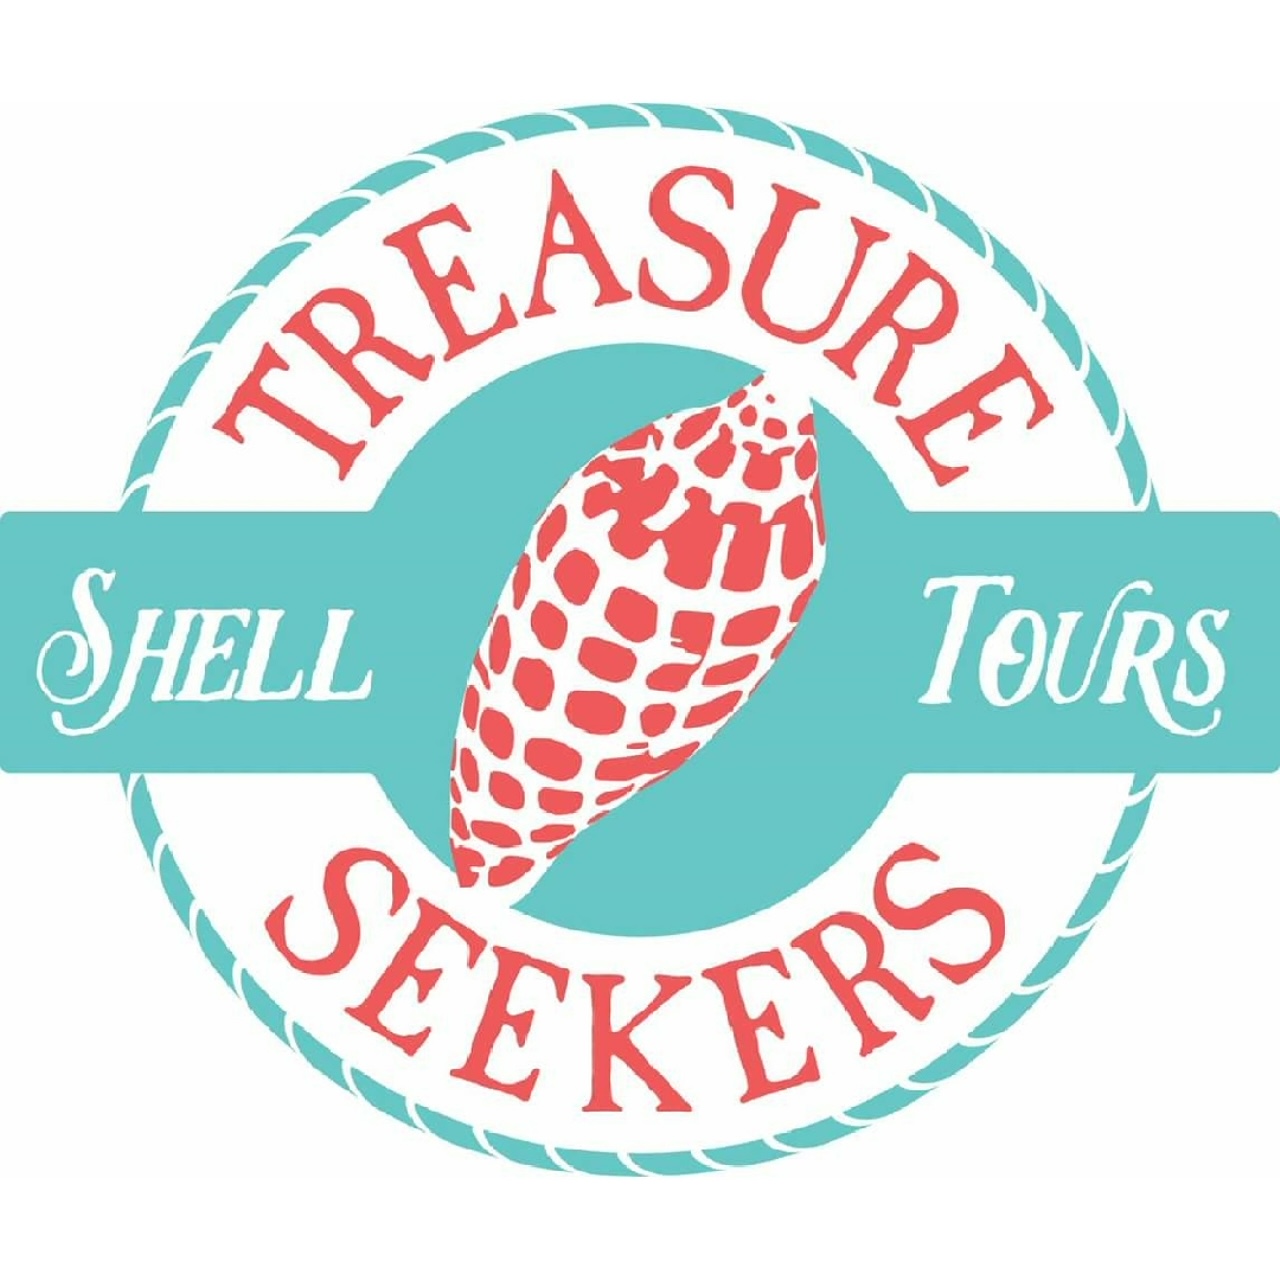 Treasure Seekers Shell Tours